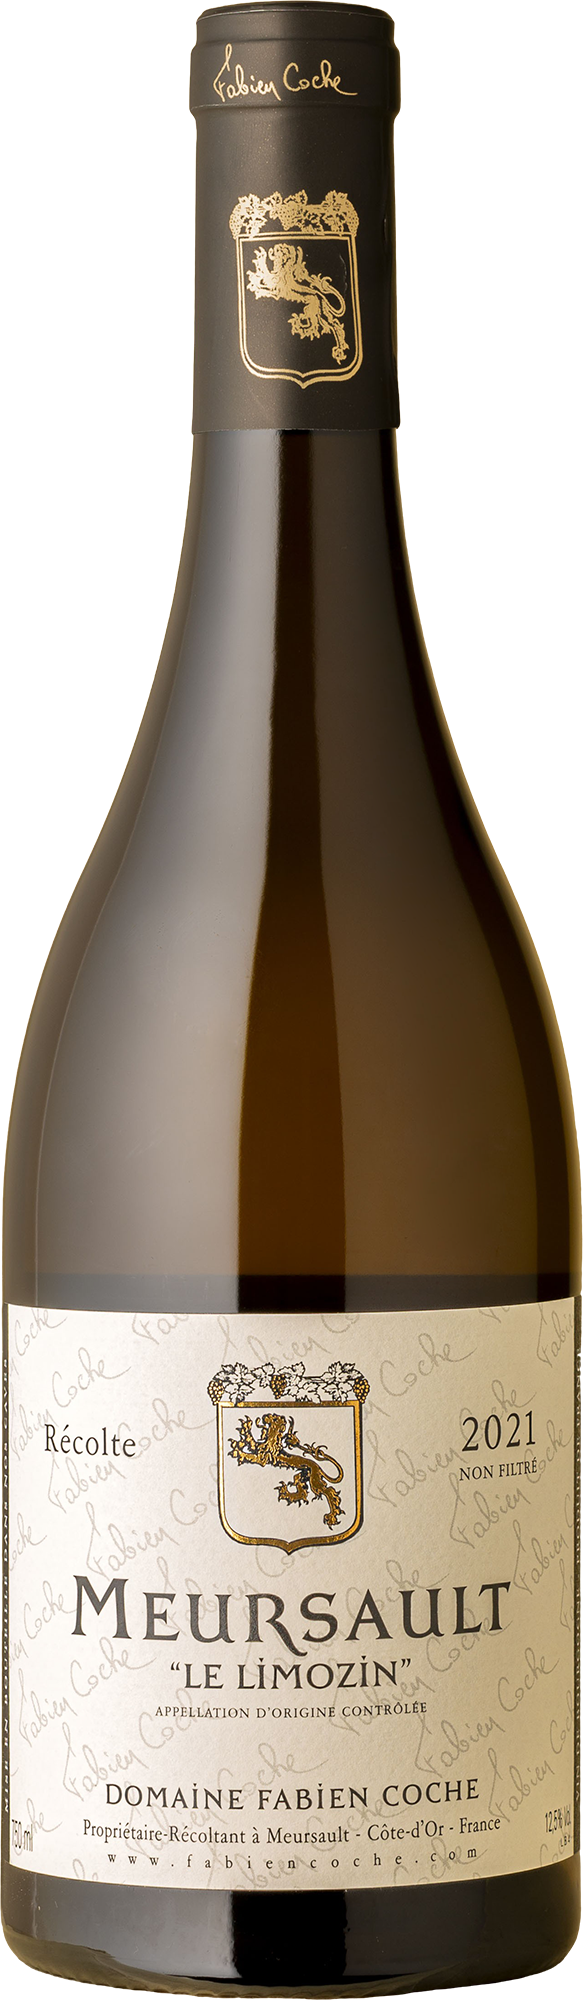 Fabien Coche - Meursault Le Limozin Chardonnay 2021 White Wine